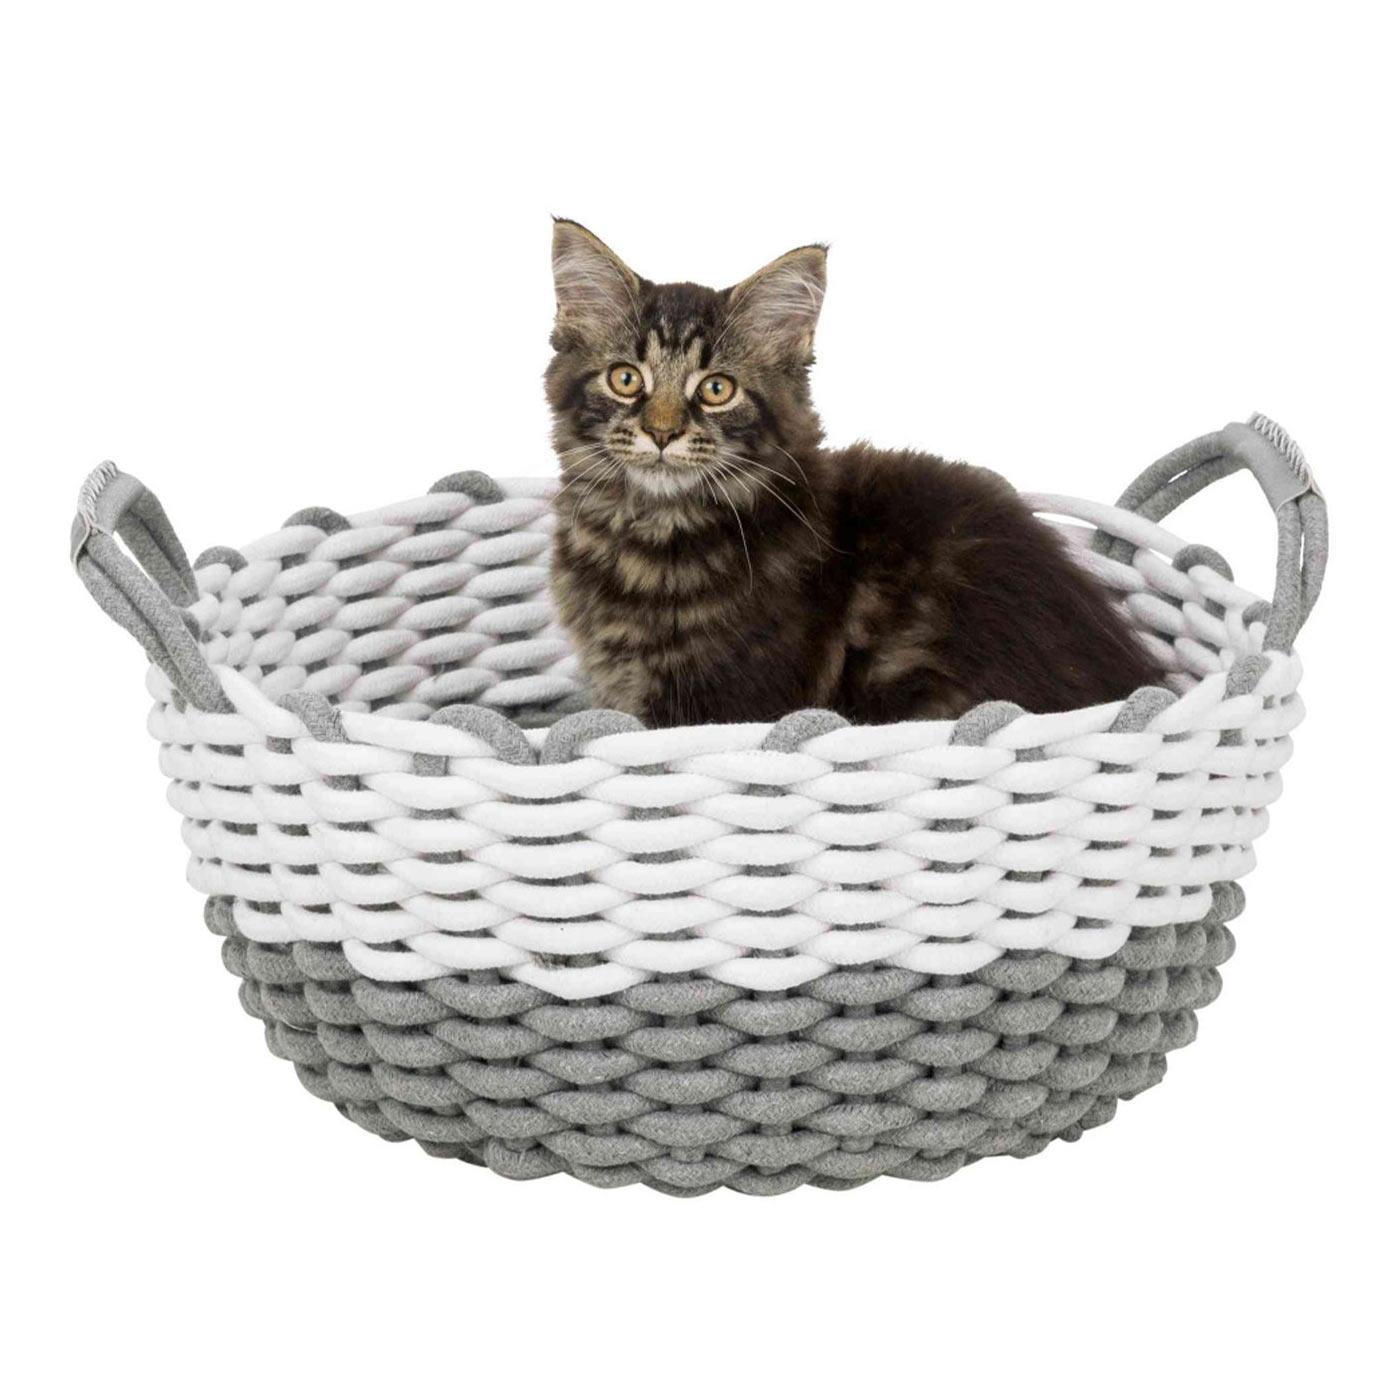 Trixie Nabou Woven Pet Basket